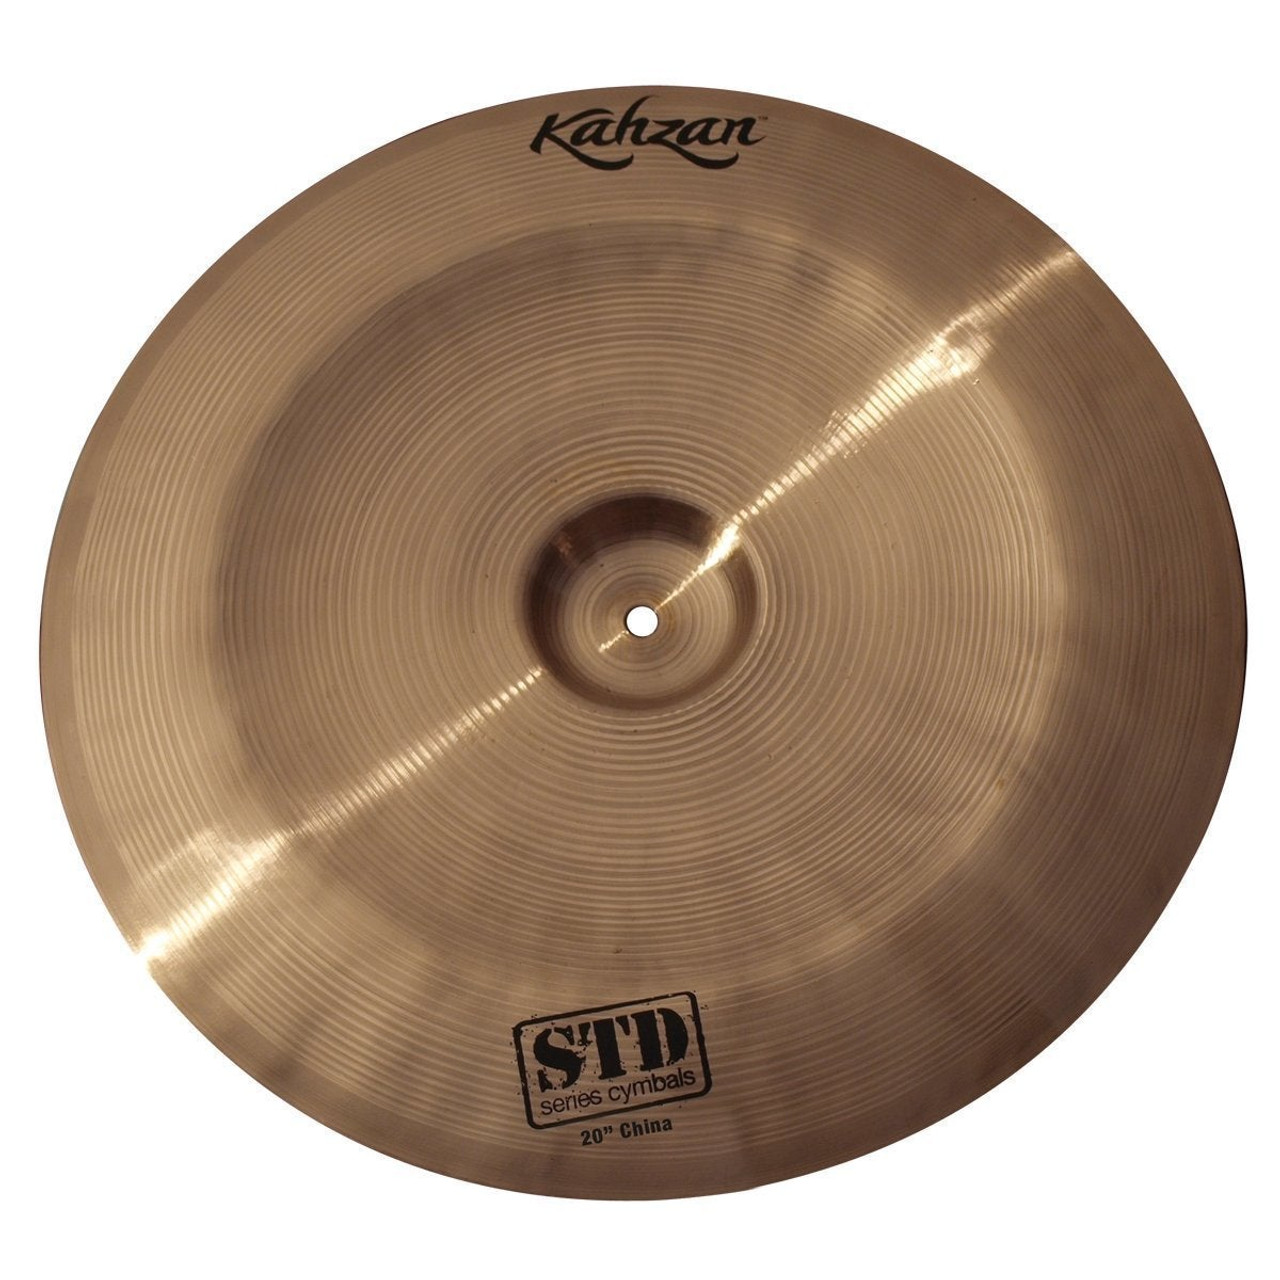 Kahzan 'STD Series' China Cymbal (20")